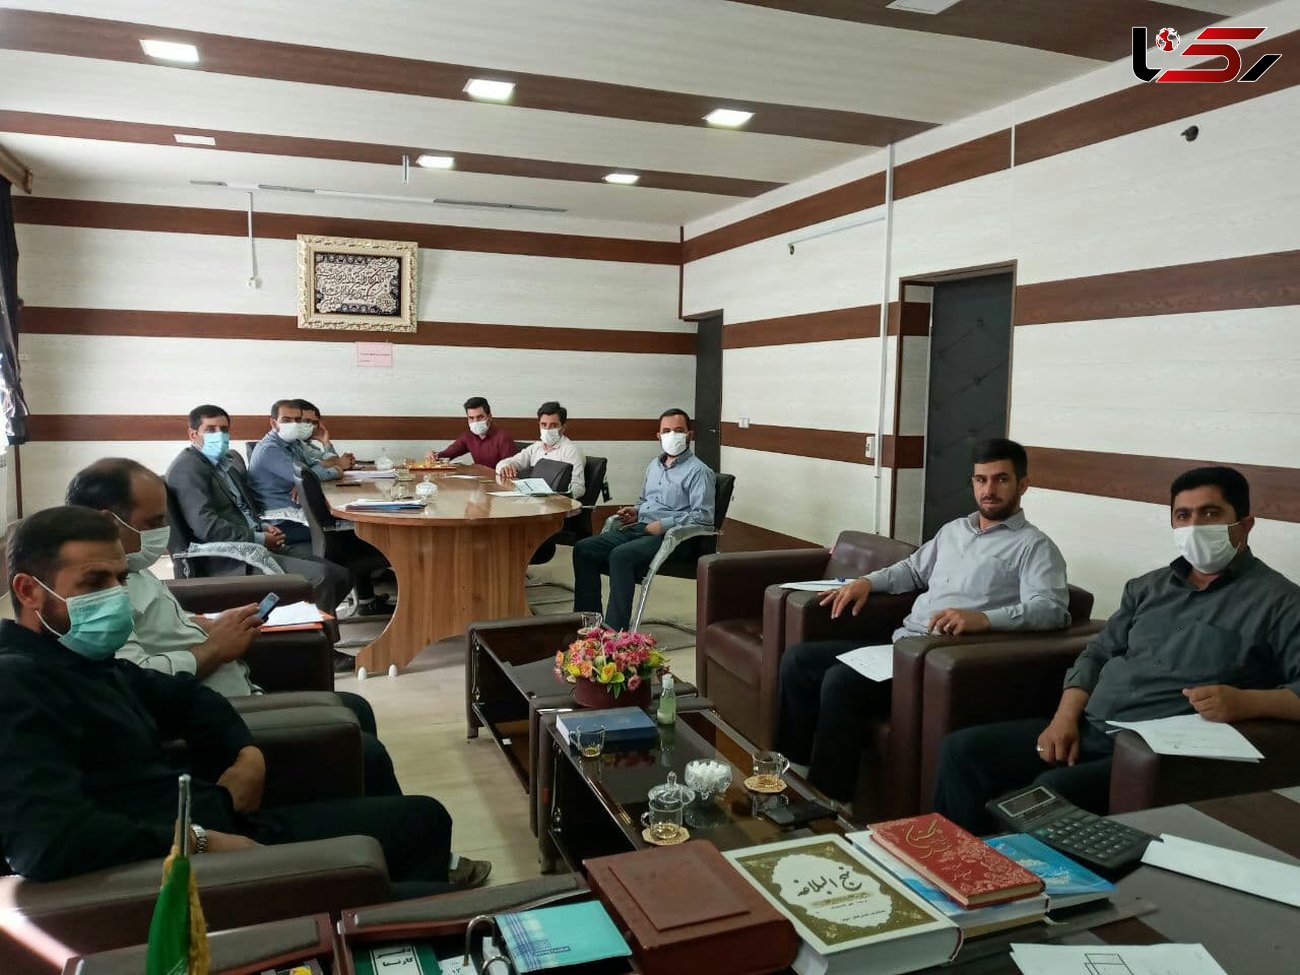 جلسه شورای معاونین آموزش و پرورش منطقه نظرکهریزی با محوریت موضوع پروژه مهر برگزار شد 